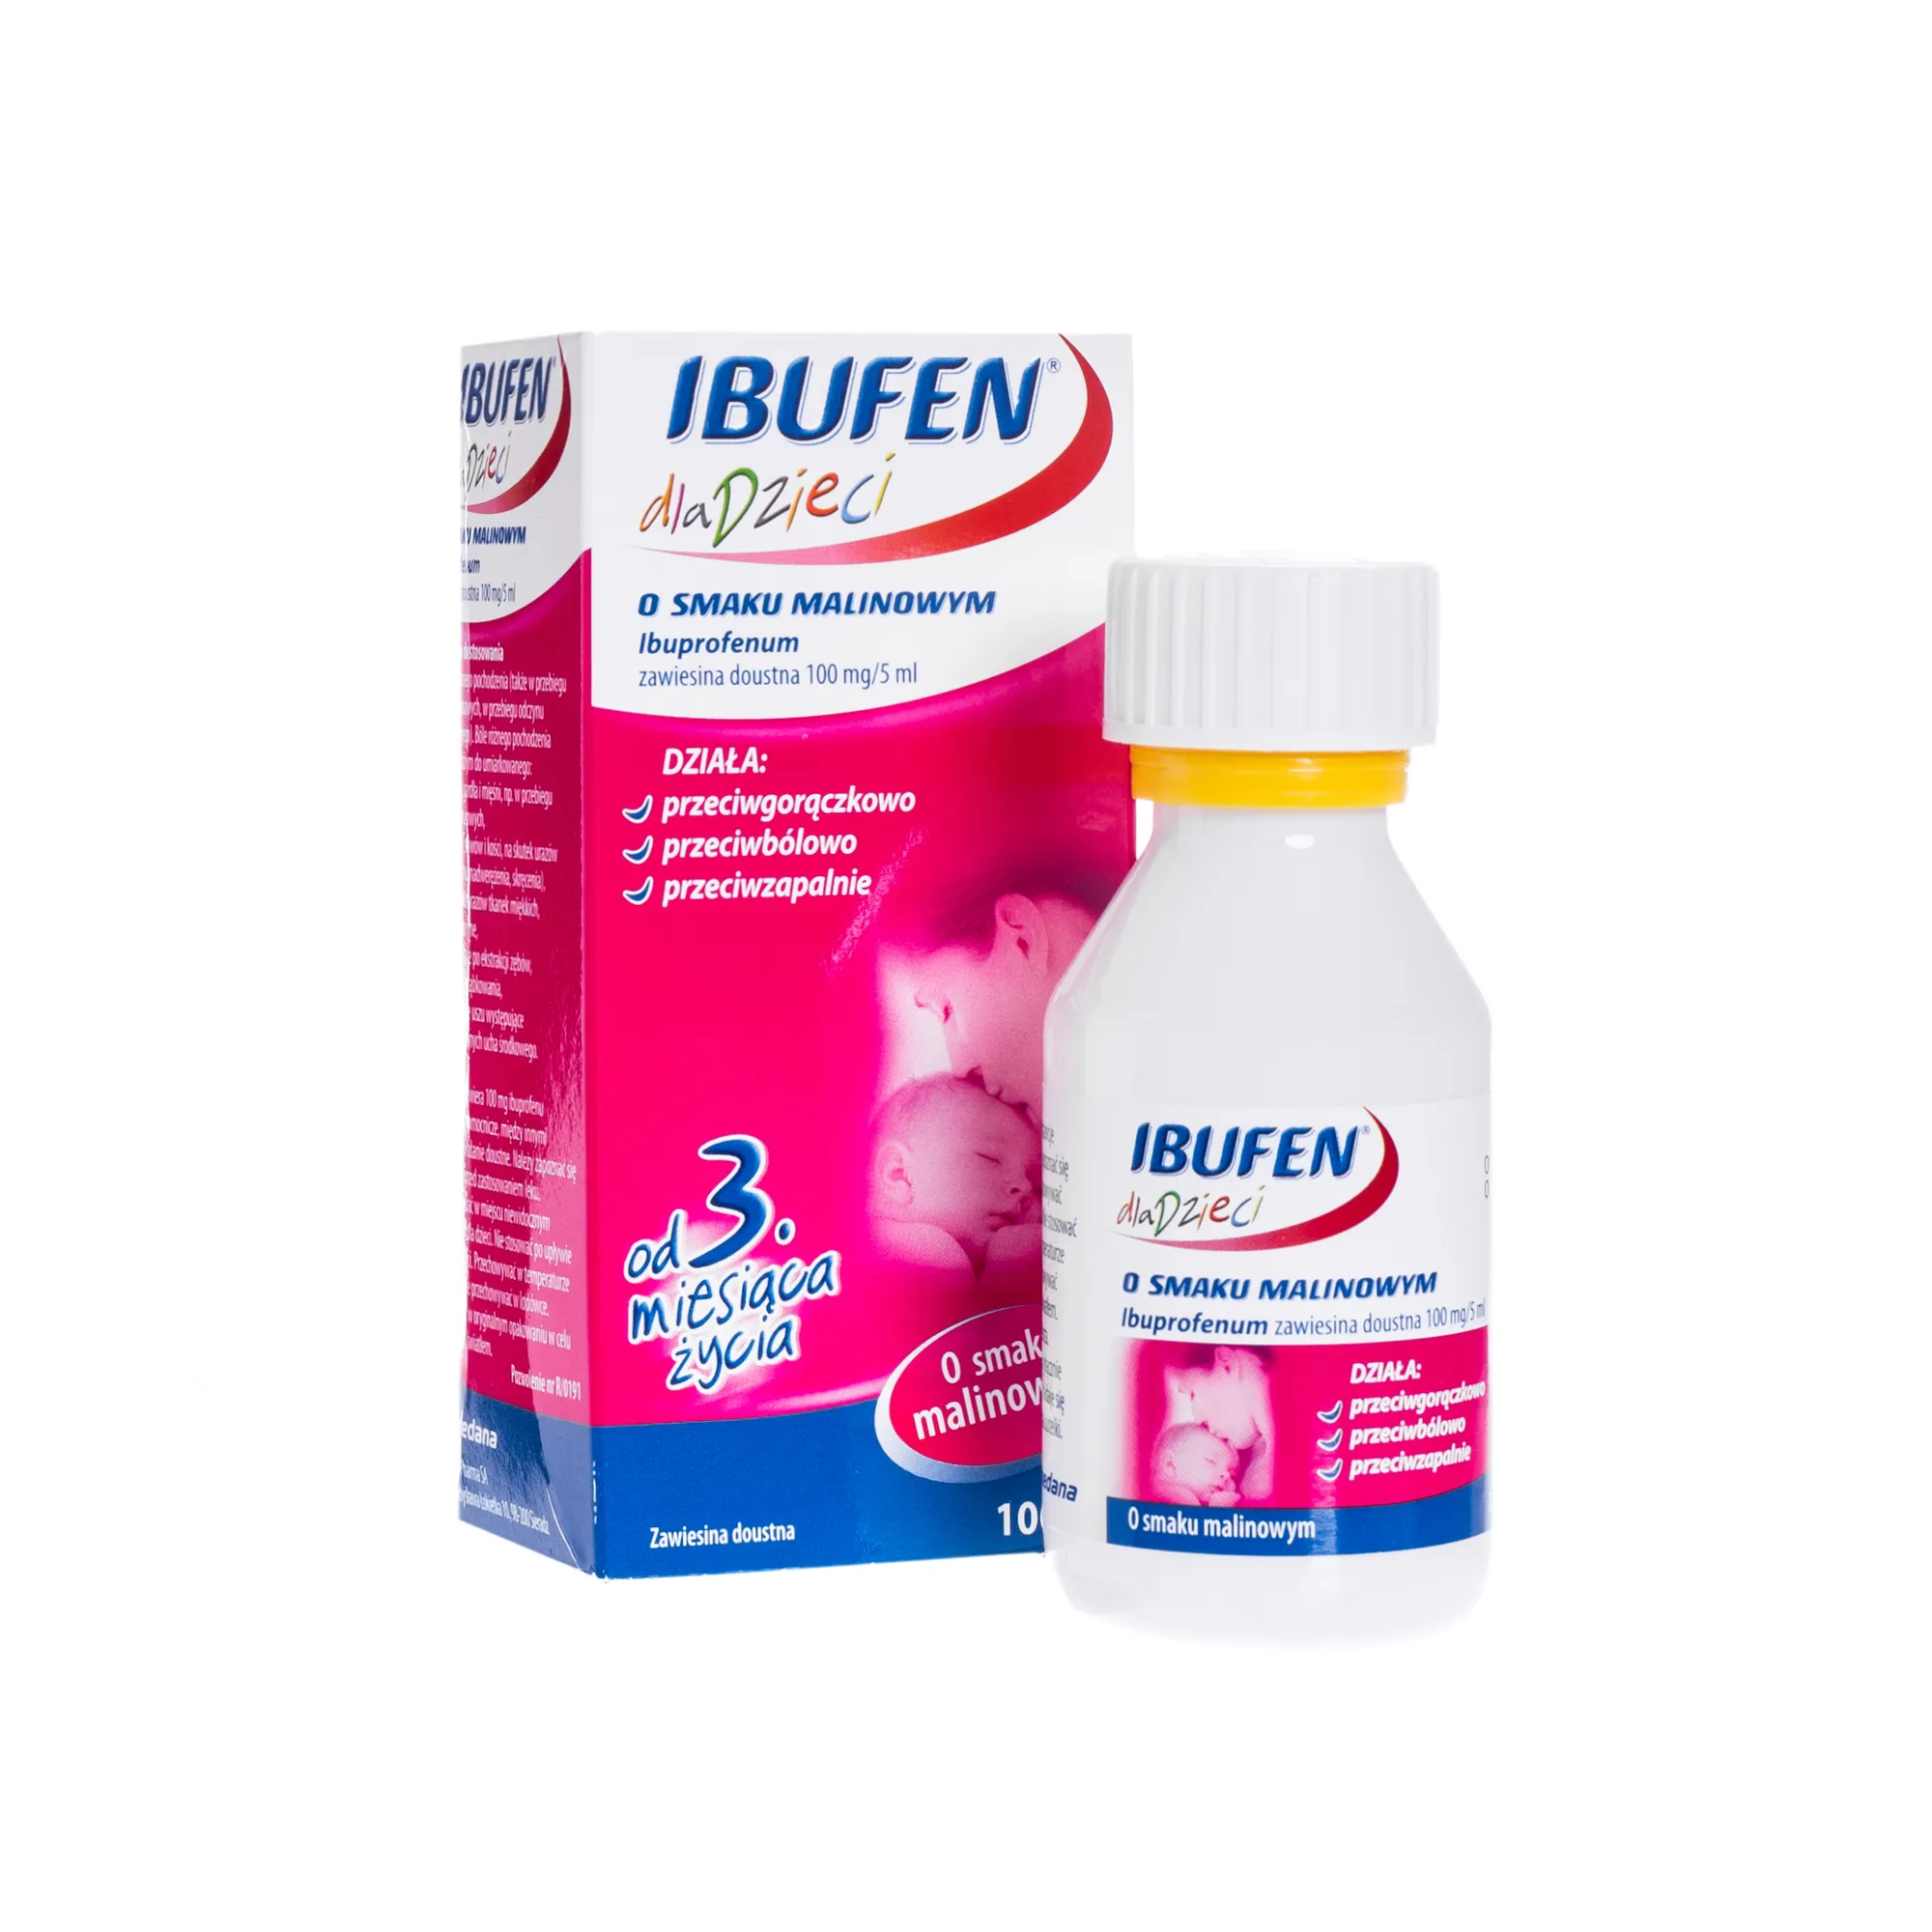 Ibufen dla dzieci, 100mg/5ml, lek przeciwgorączkowy, smak malinowy, 100 ml 